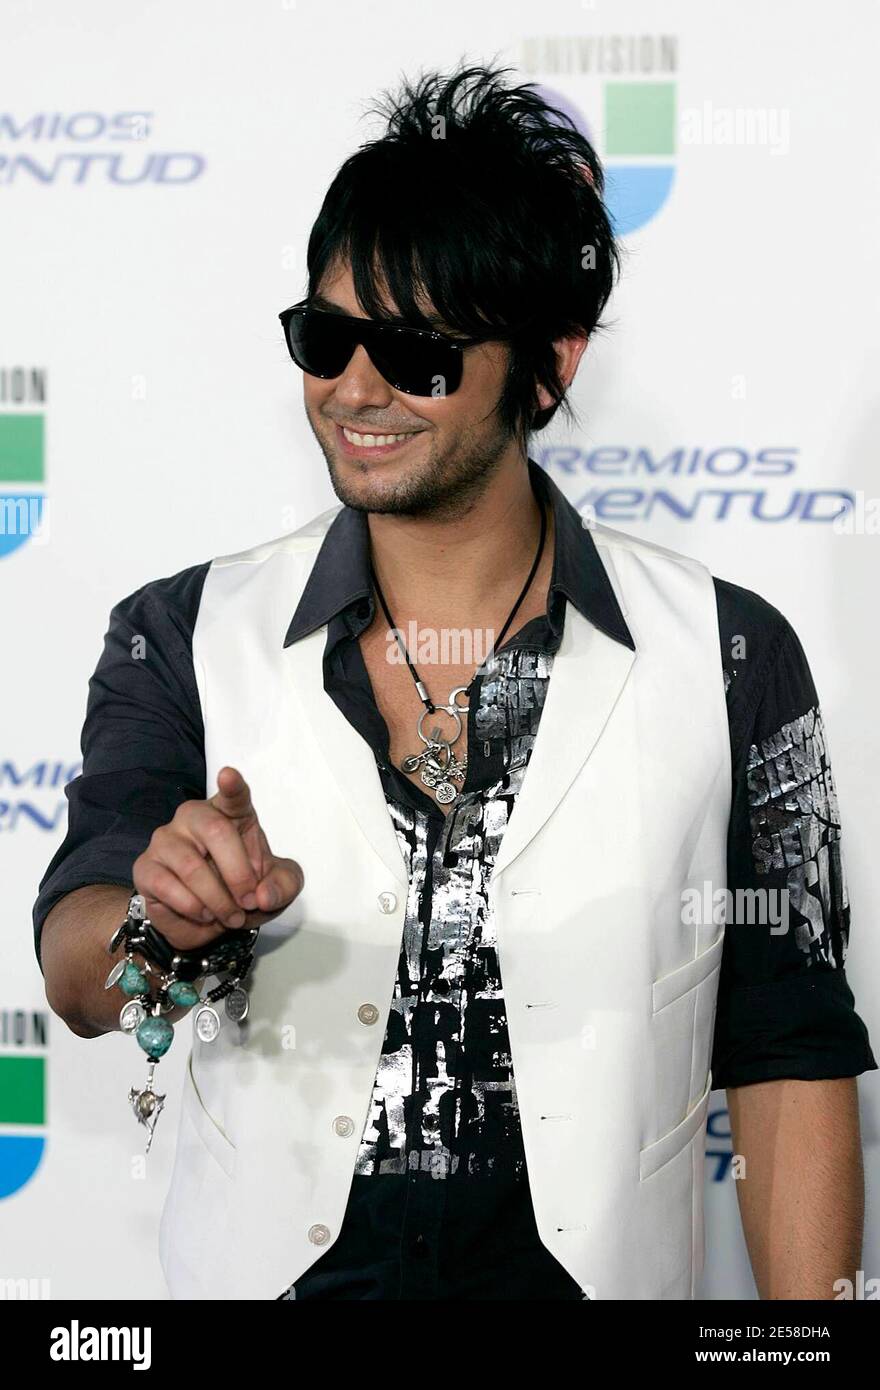 Beto Cuevas arrive pour les Premios Juventud Awards 2007 au BankUnited Center. Coral Gables, Floride 7/19/07. [[fa]] Banque D'Images